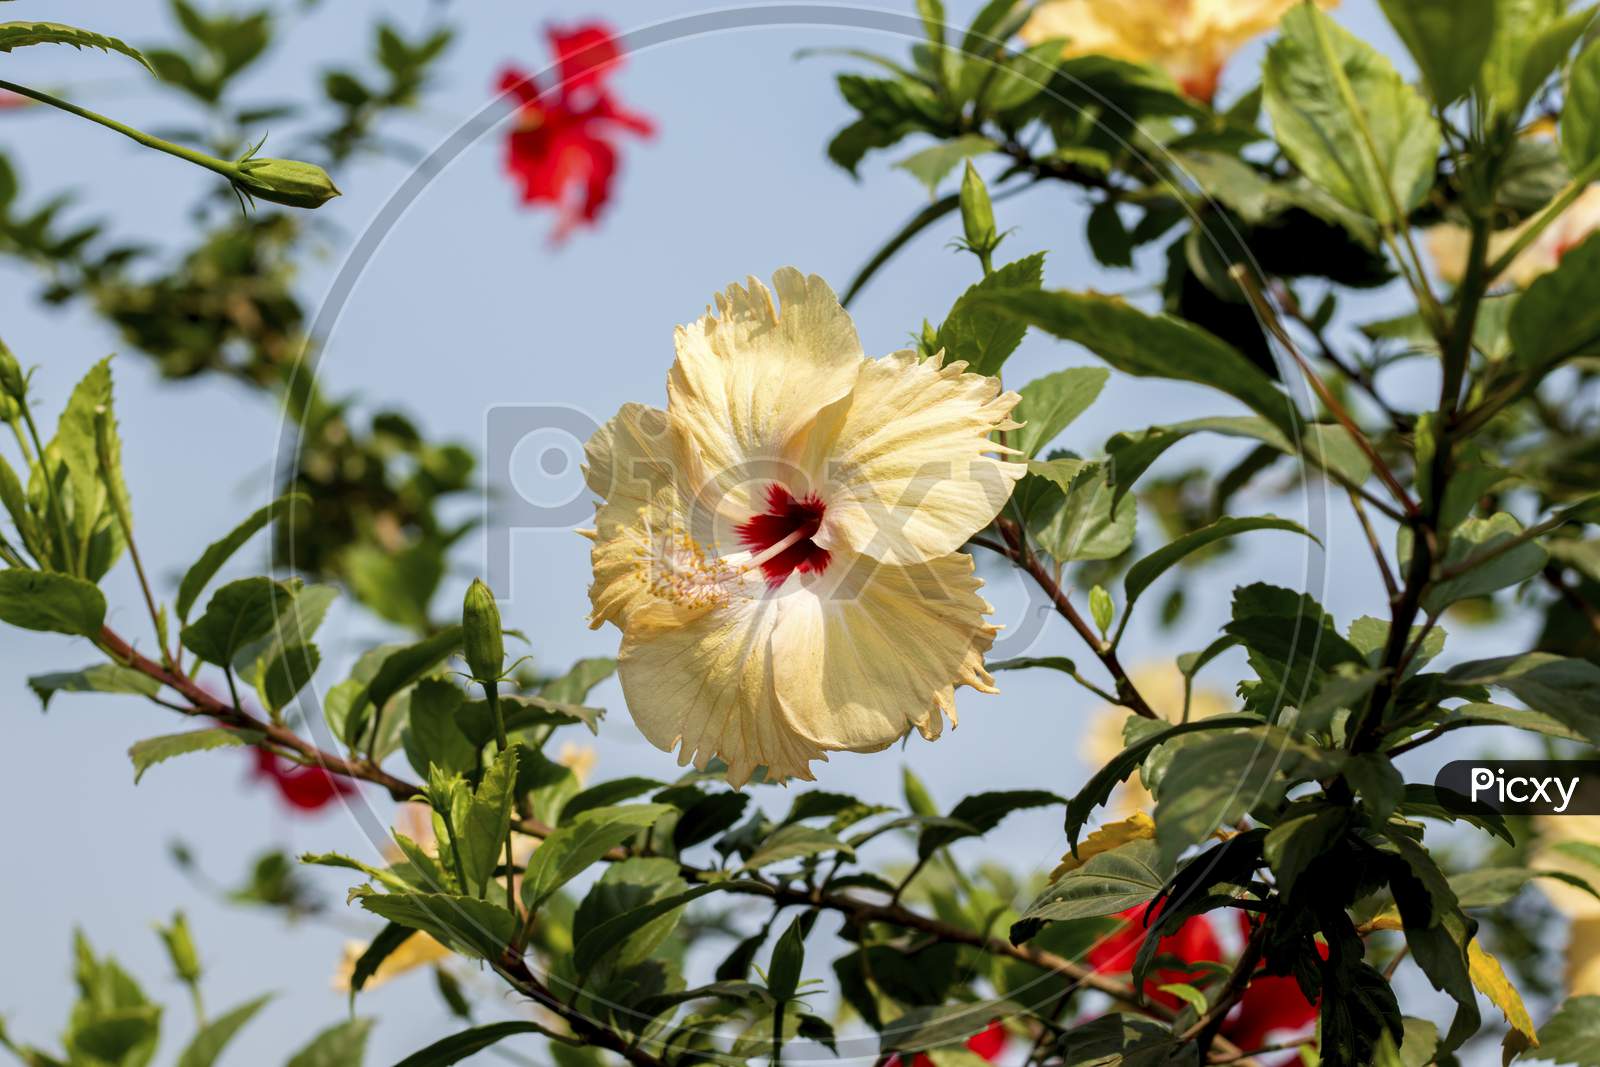 yellowish white hibiscus flowers